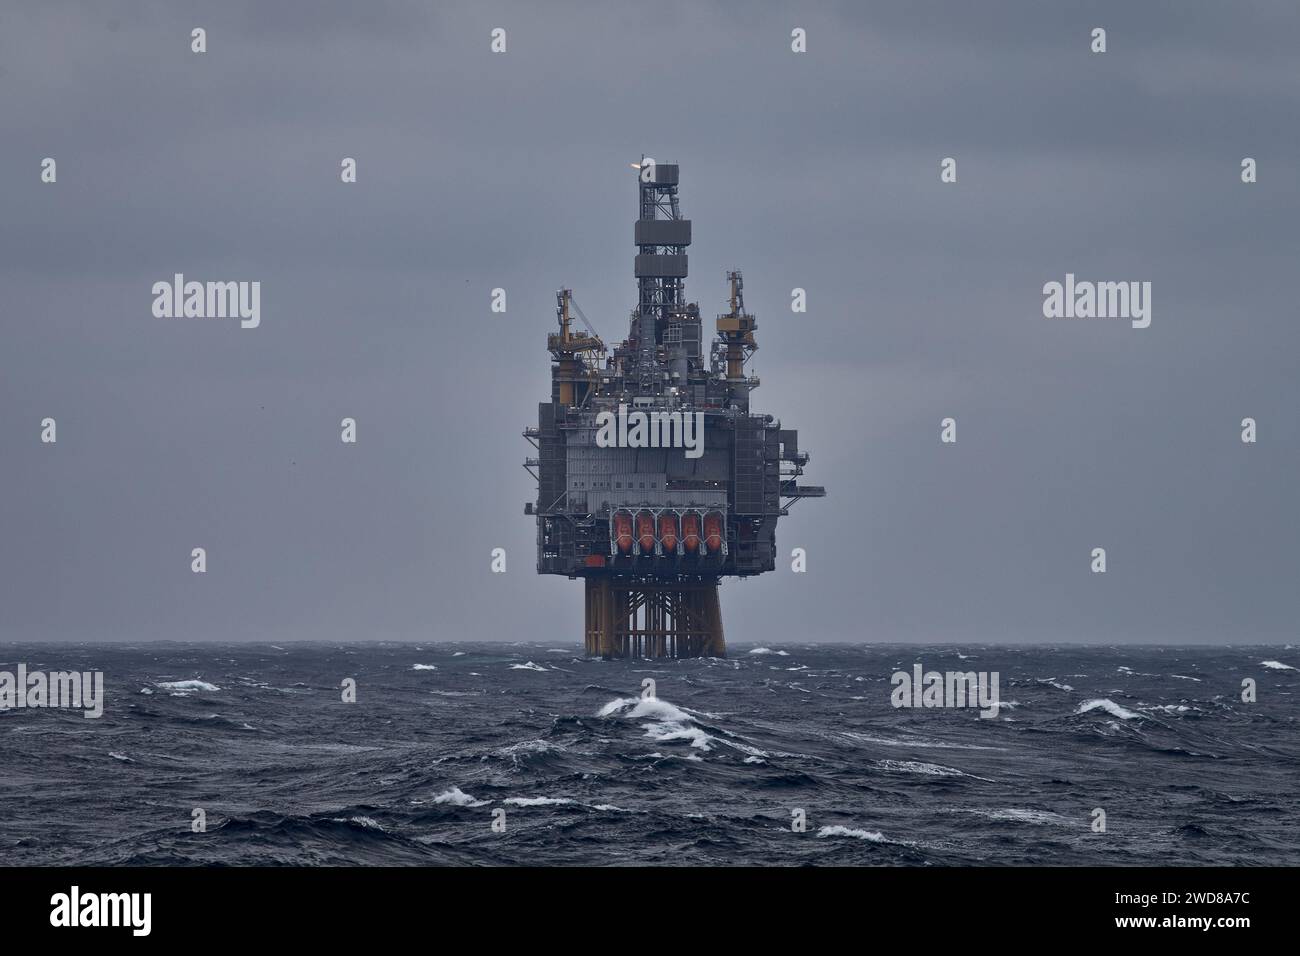 Photo d'une plate-forme de forage pétrolier et gazier offshore dans la mer agitée par temps orageux. Banque D'Images